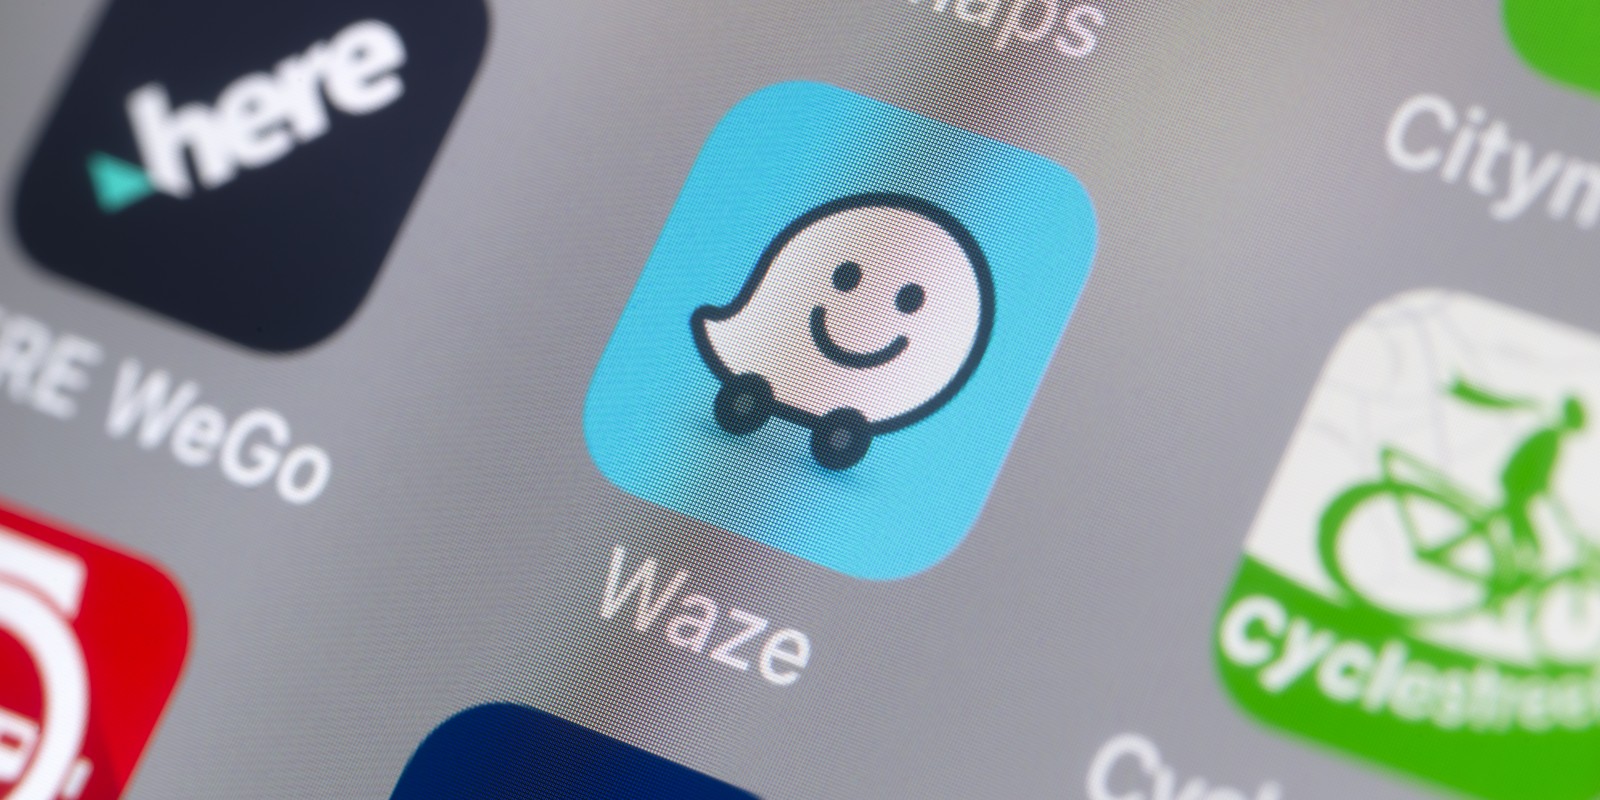 Waze App on Mobile Screen